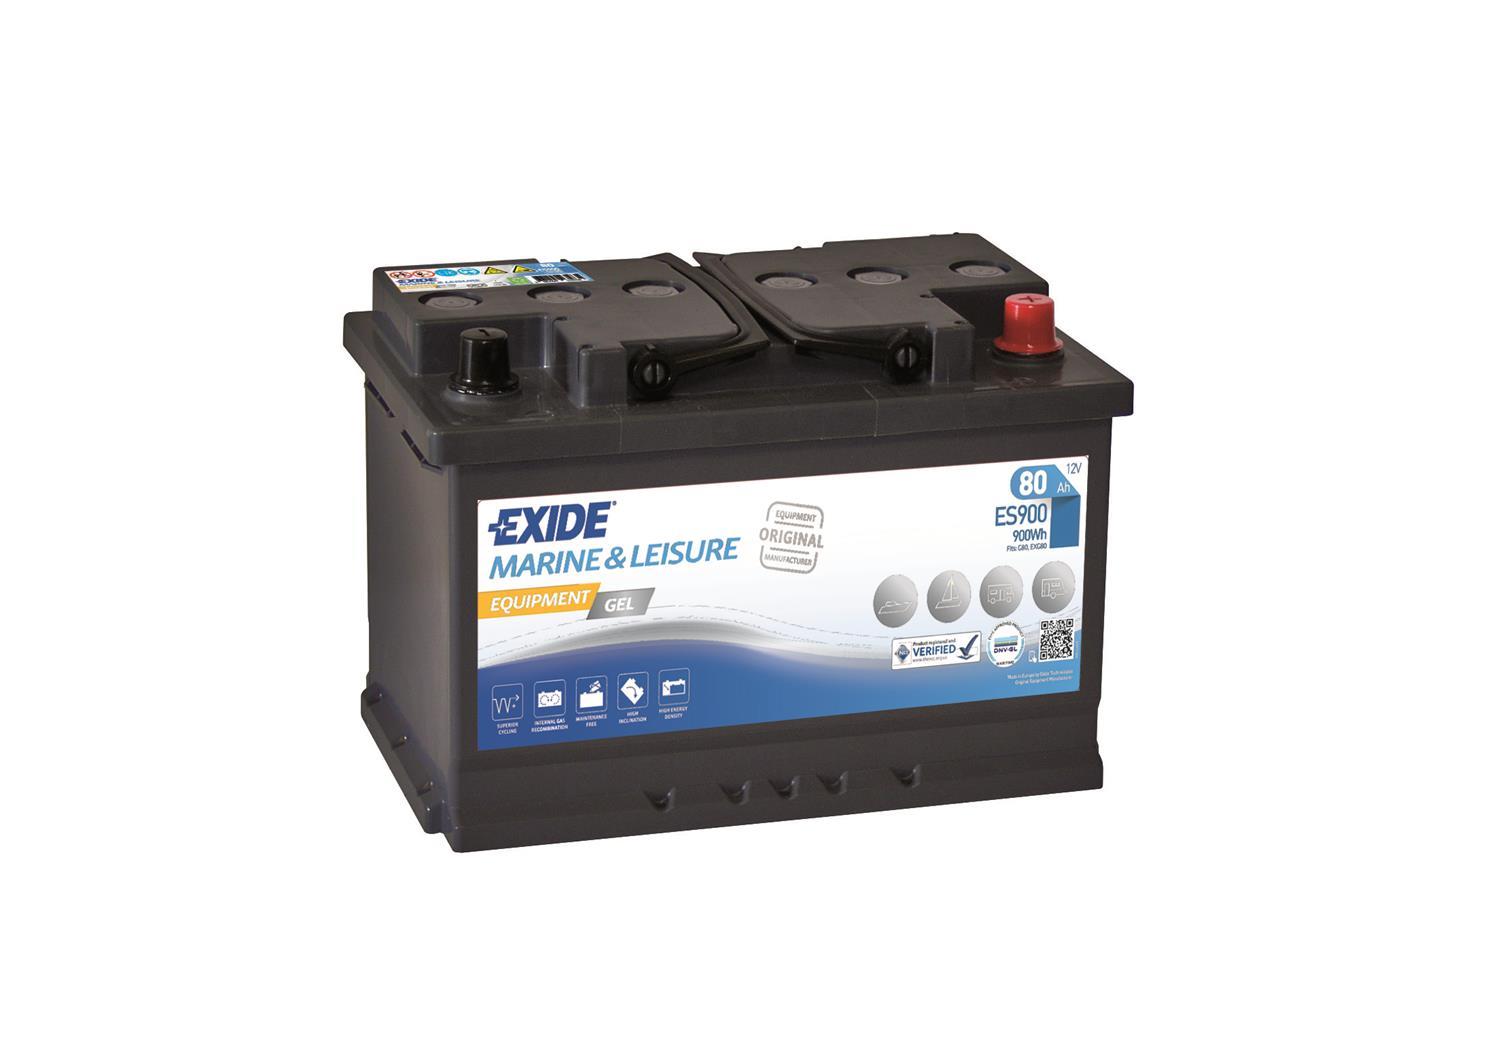 Akumulator EXIDE equipment gel es900 80Ah D+ 353x175x190 (900A)